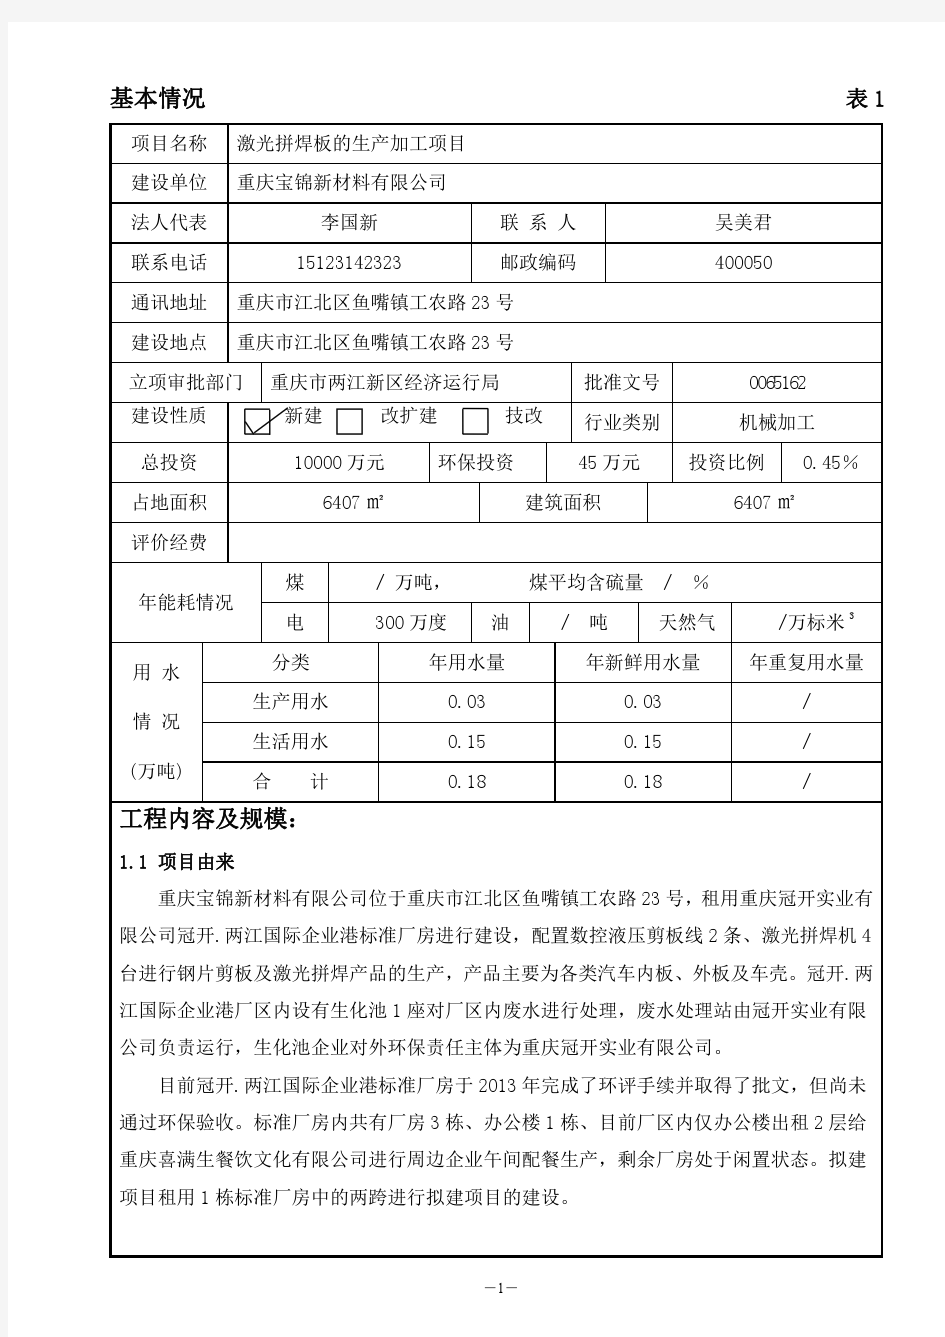 重庆宝锦新材料有限公司激光拼焊项目 复审批注 周雪